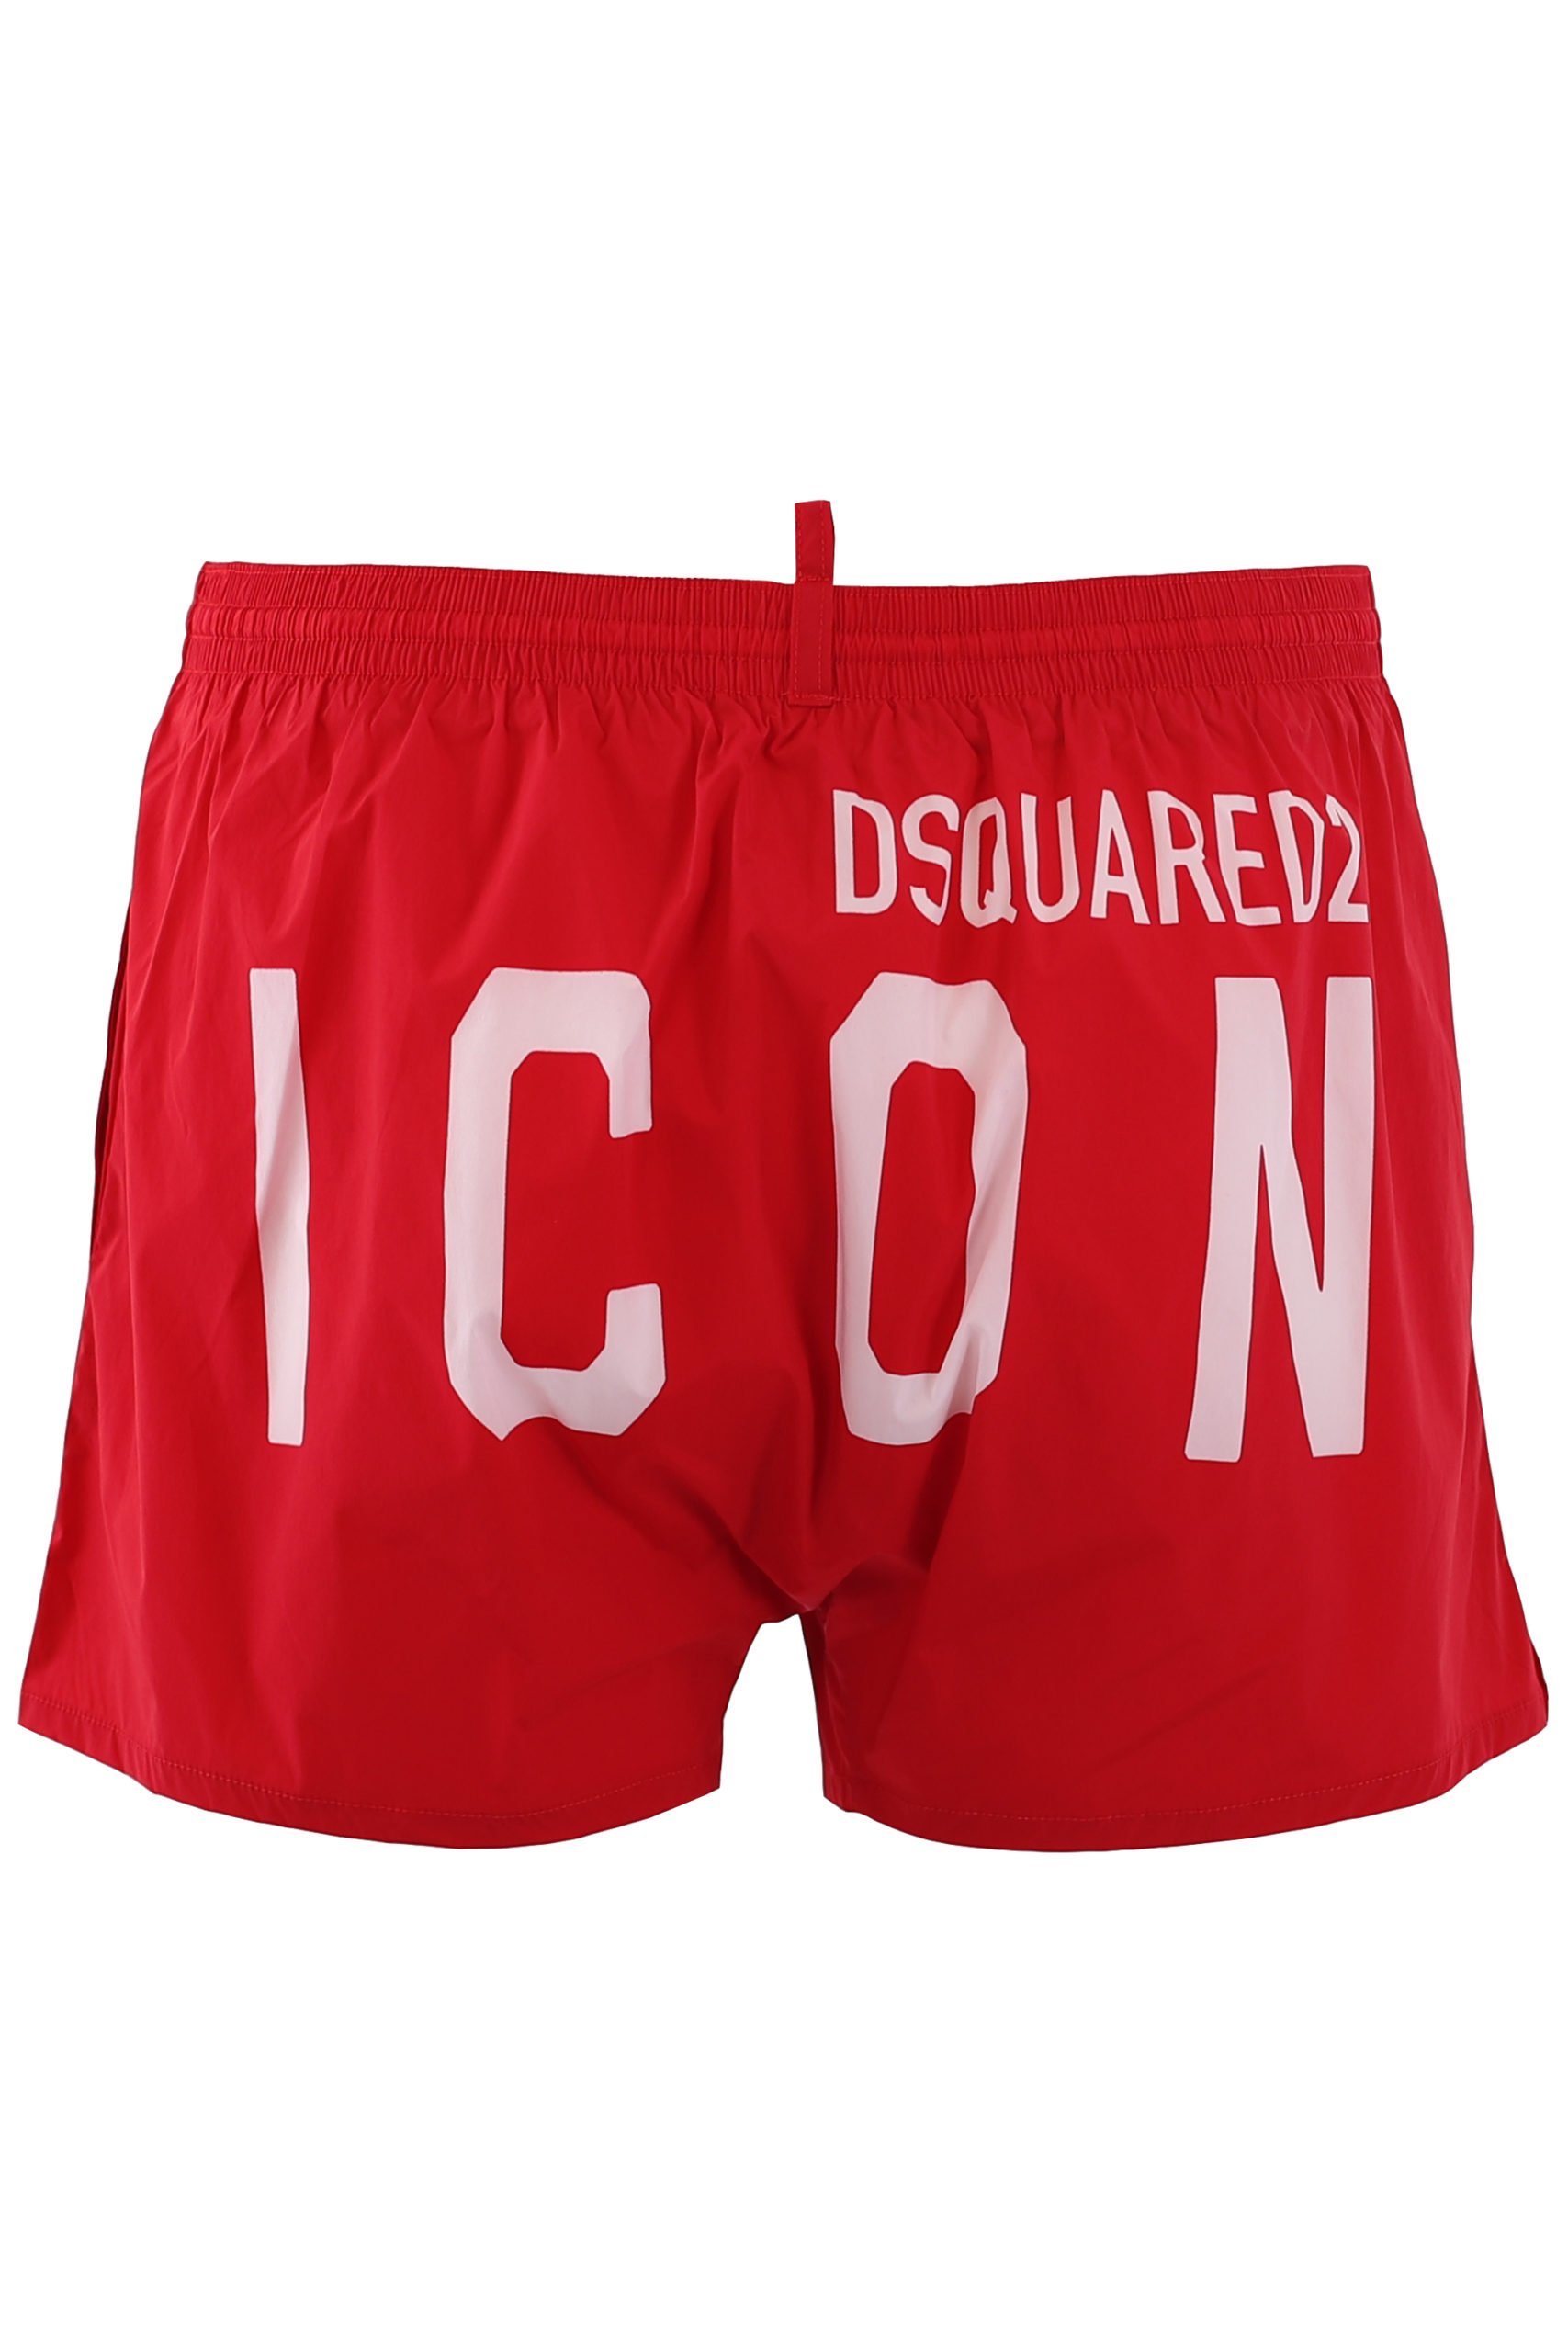 Dsquared2 - Bañador midi rojo logo "icon" - Fashion